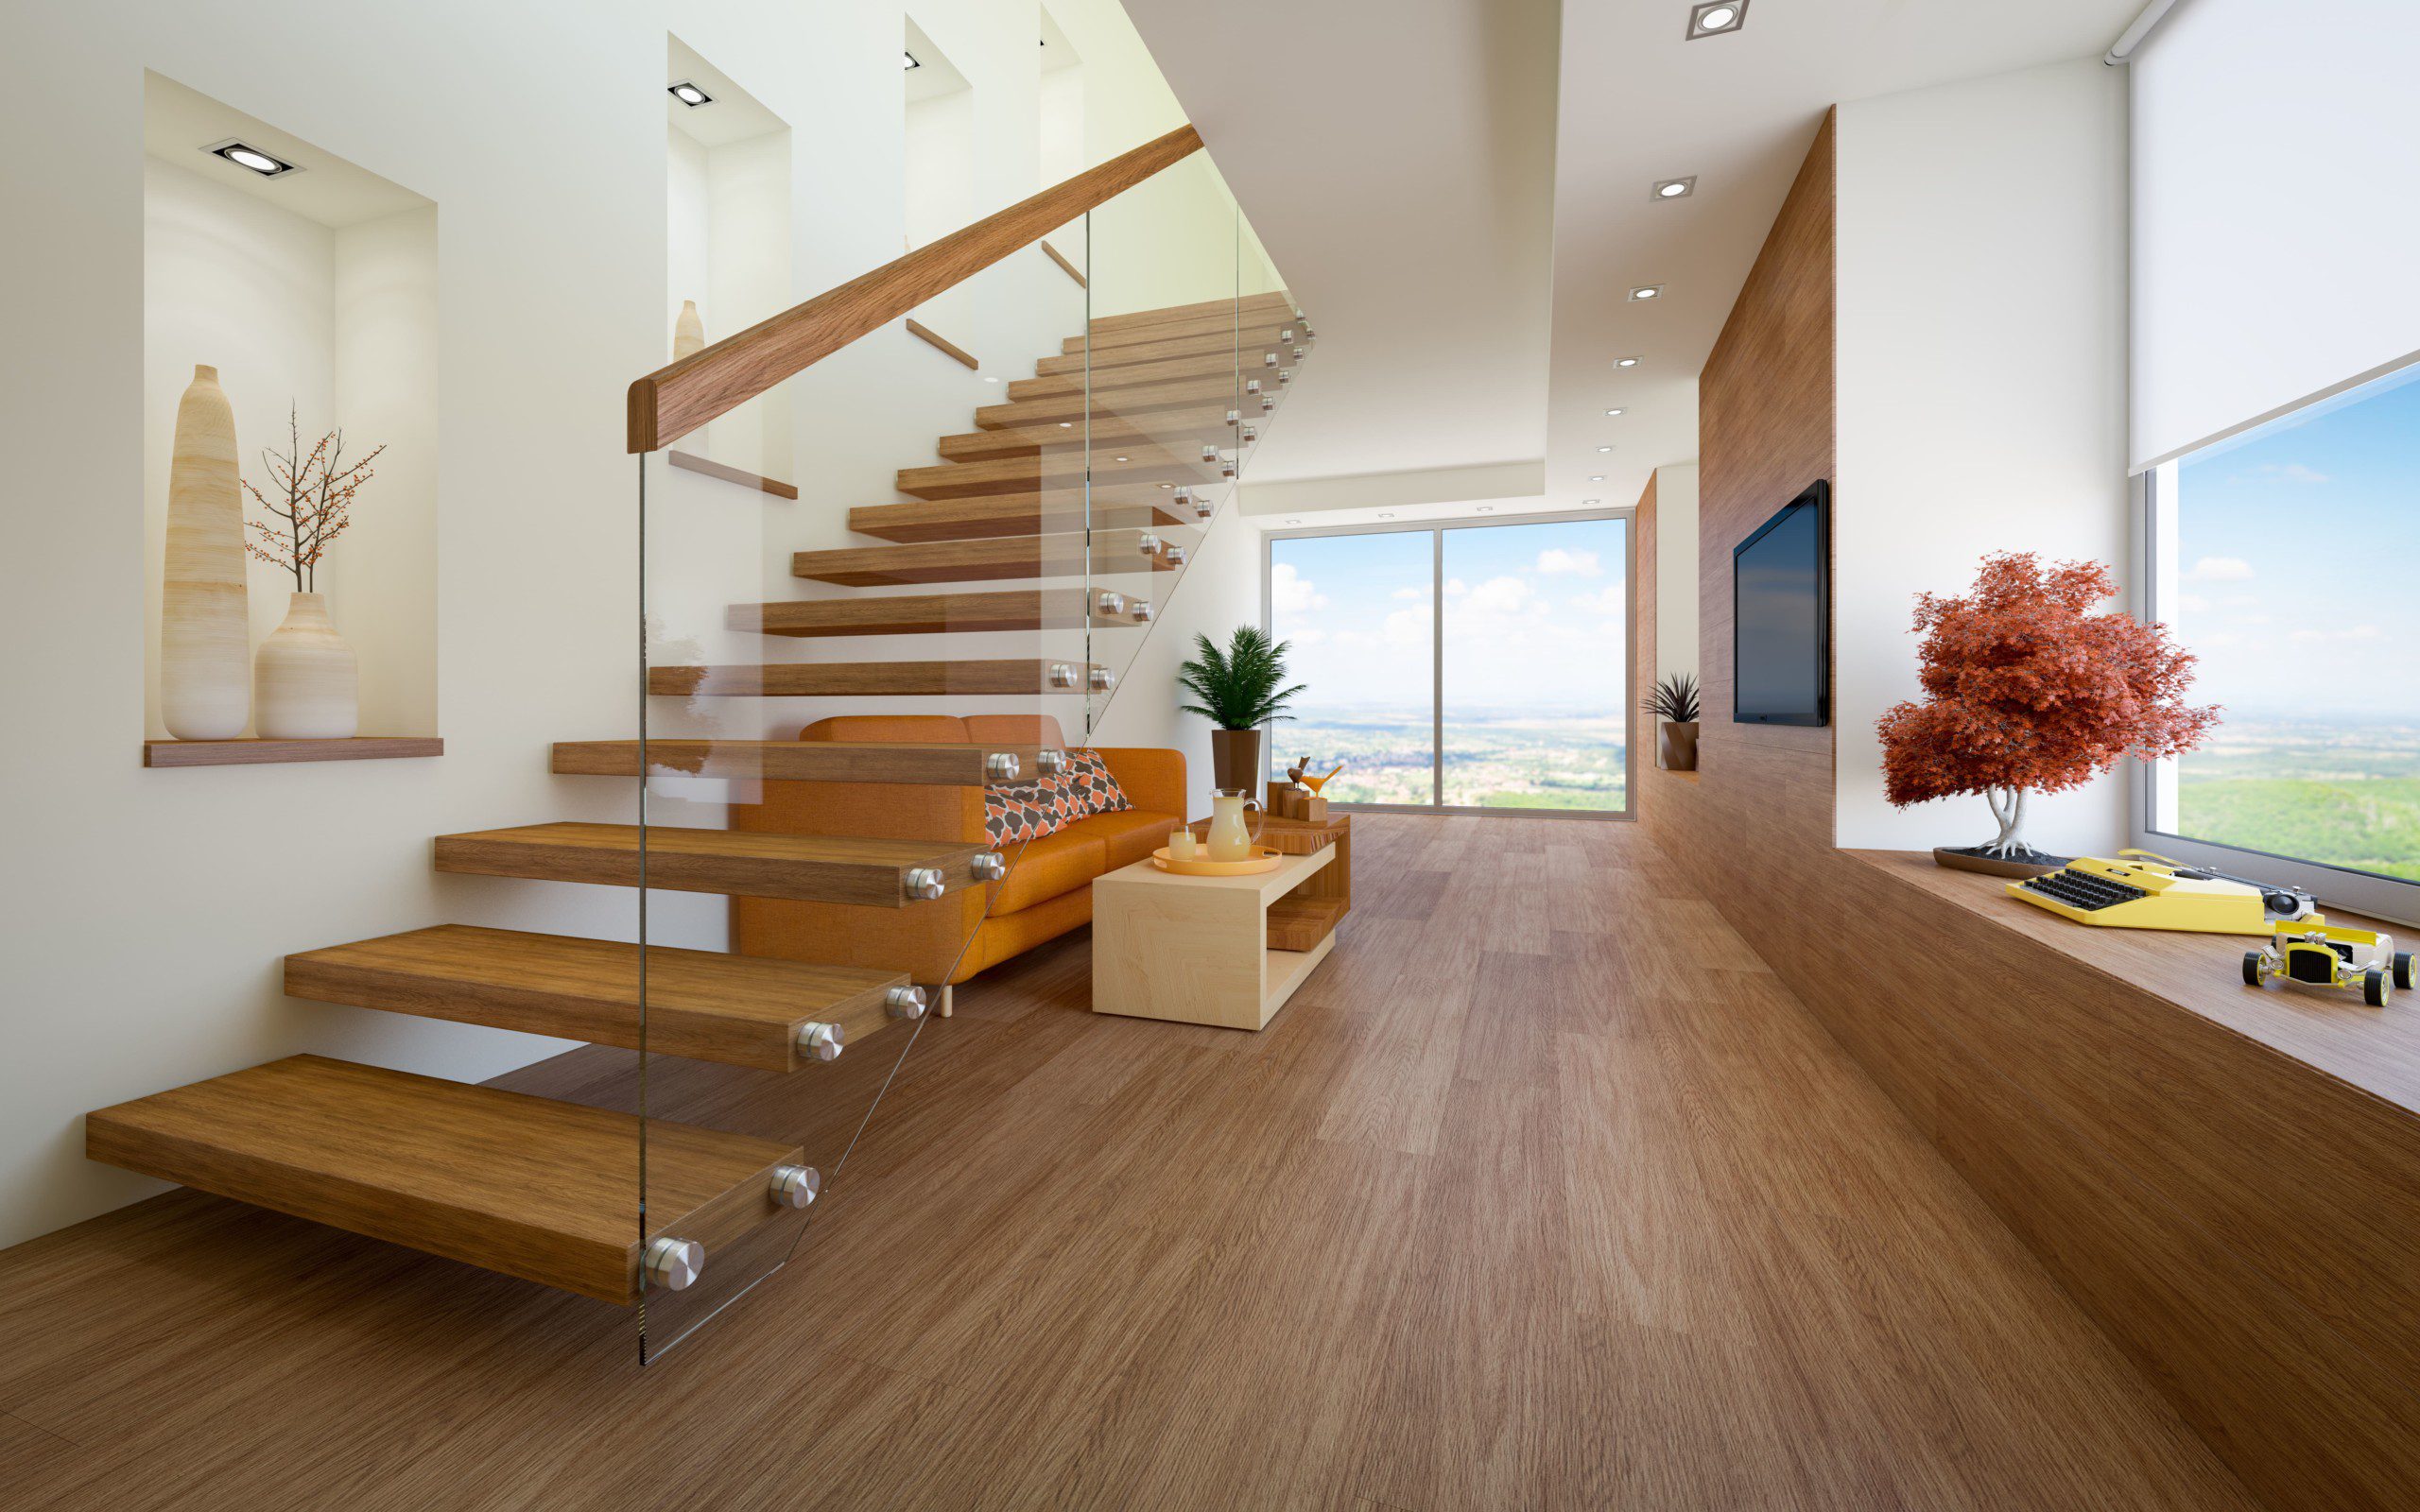 Sala de estar moderna e aconchegante com escada em madeira e sofá embaixo. 